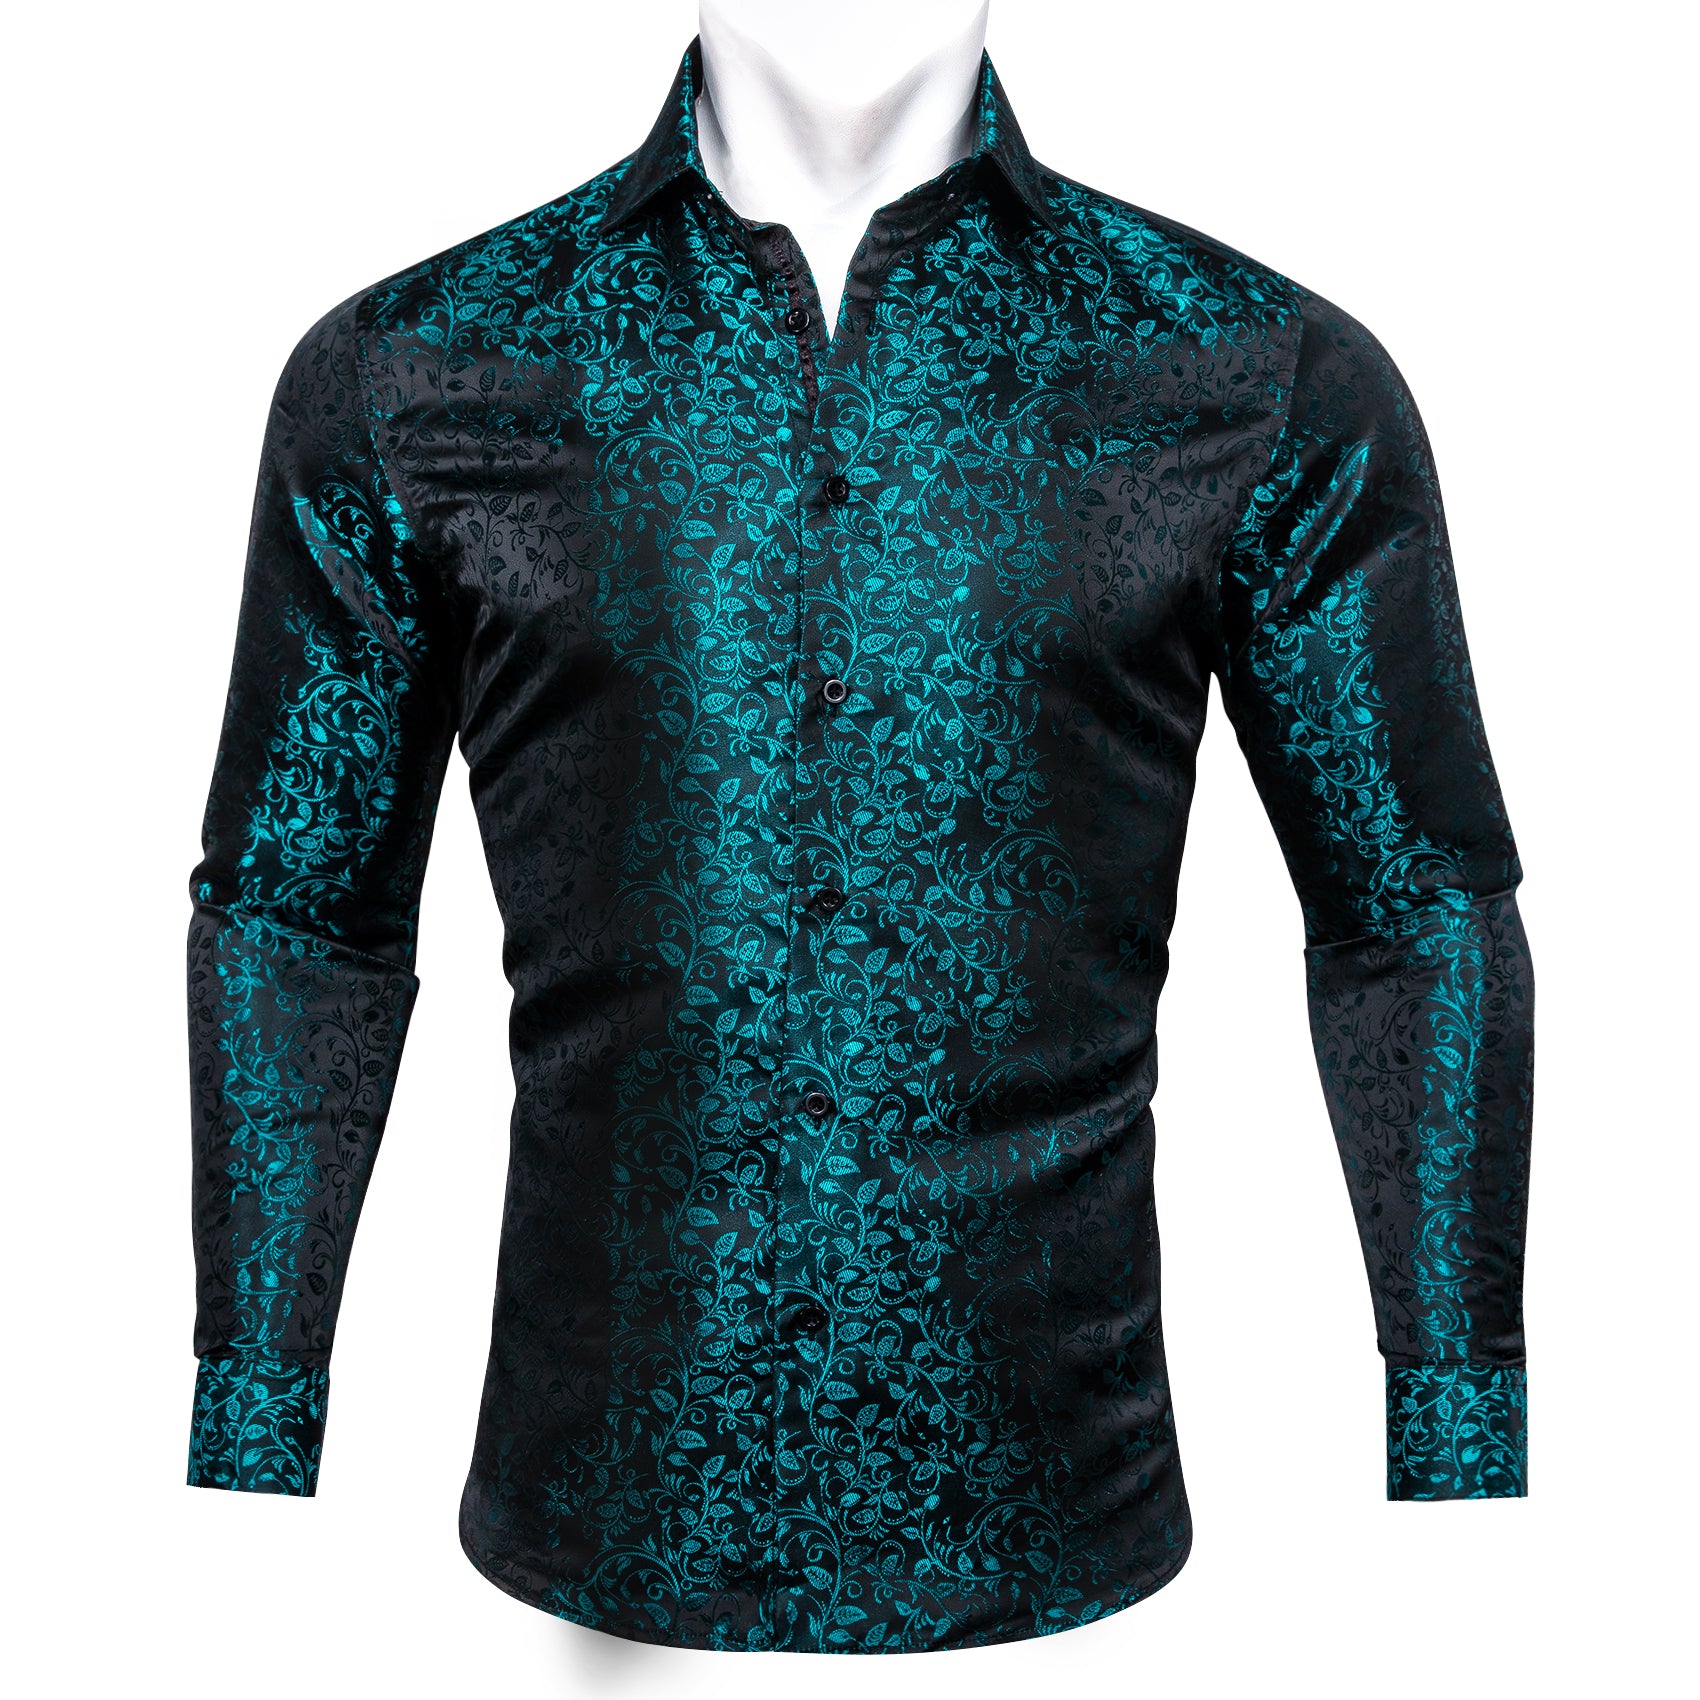 Barry.wang New Blue Black Floral Silk Shirt